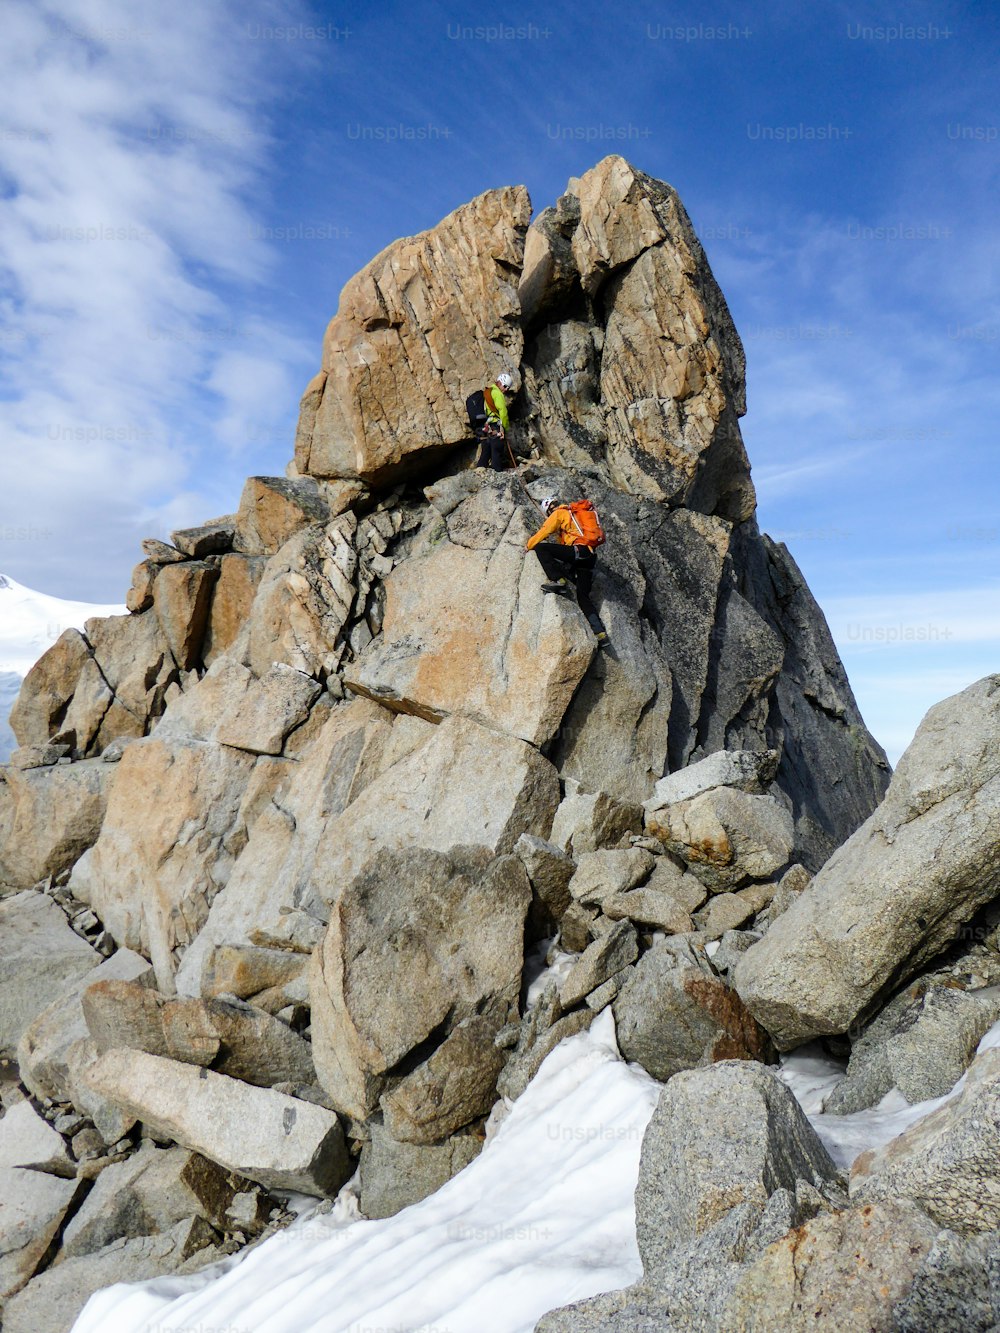 guia de montanha e um cliente do sexo masculino em um cume rochoso indo em direção a um cume alto nos Alpes franceses perto de Chamonix em um belo dia de verão